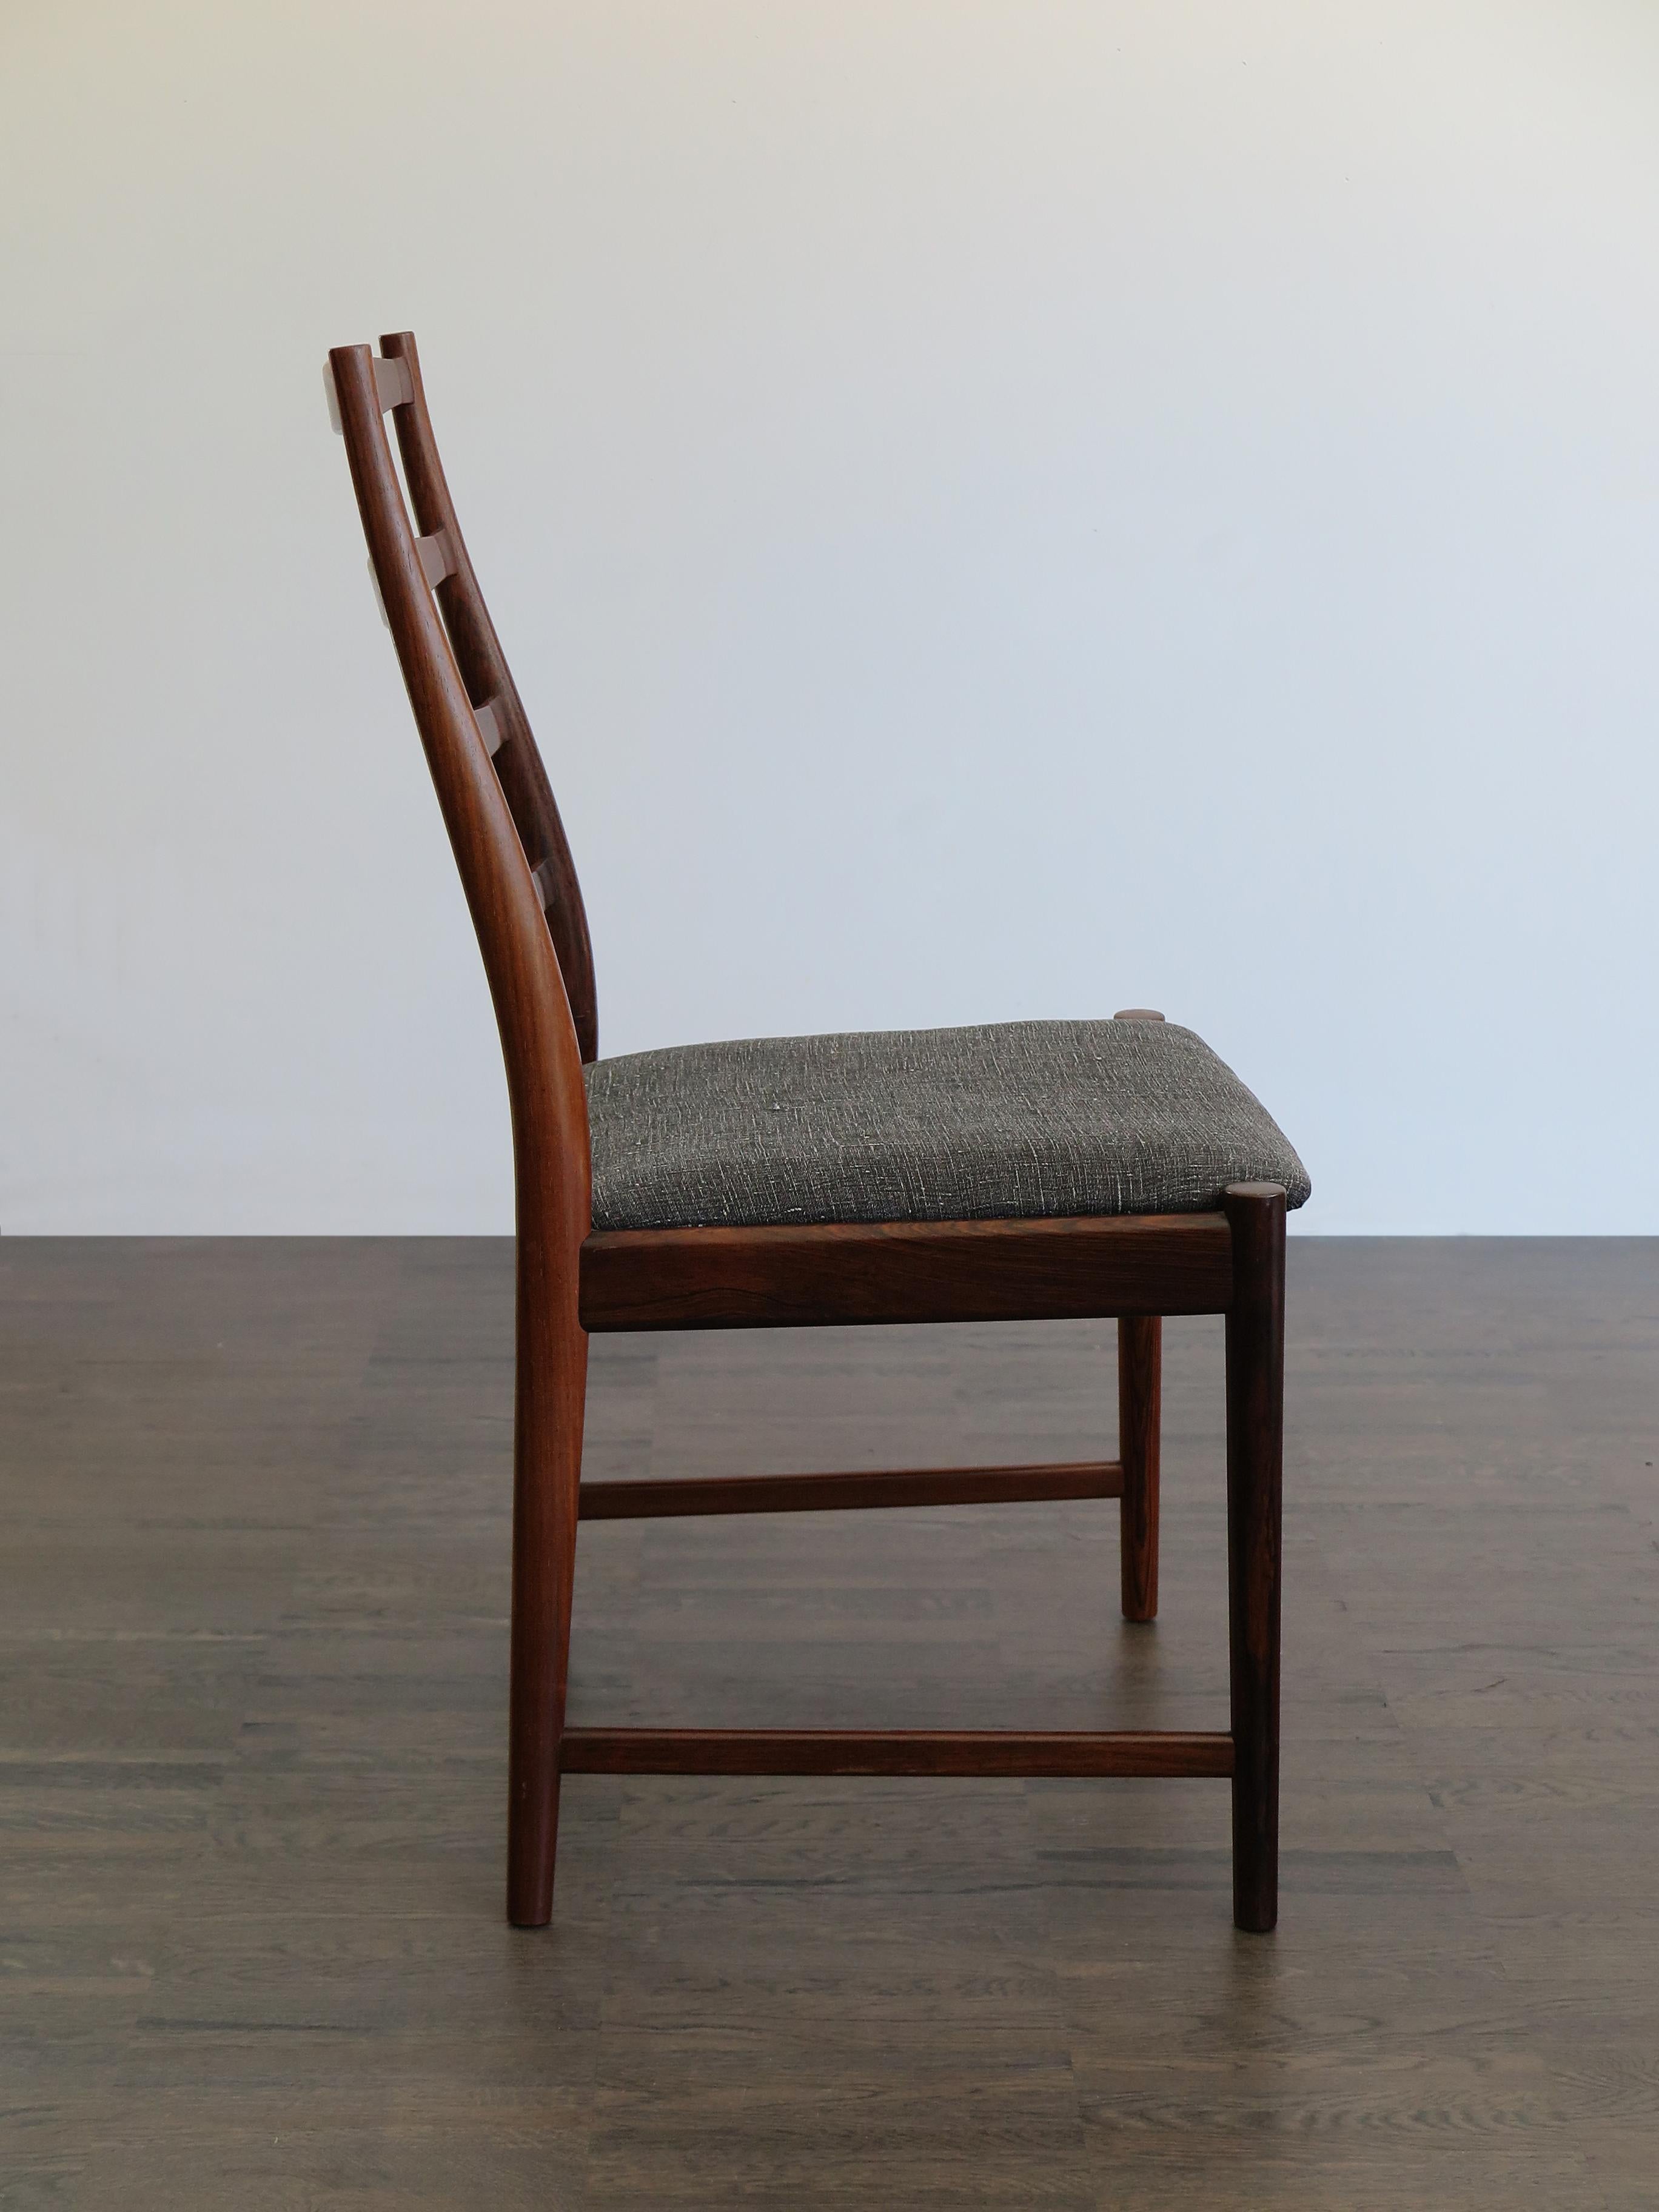 Arne Vodder Mid-Century Modern Scandinavian Dark Wood Dining Chairs, 1960s For Sale 1